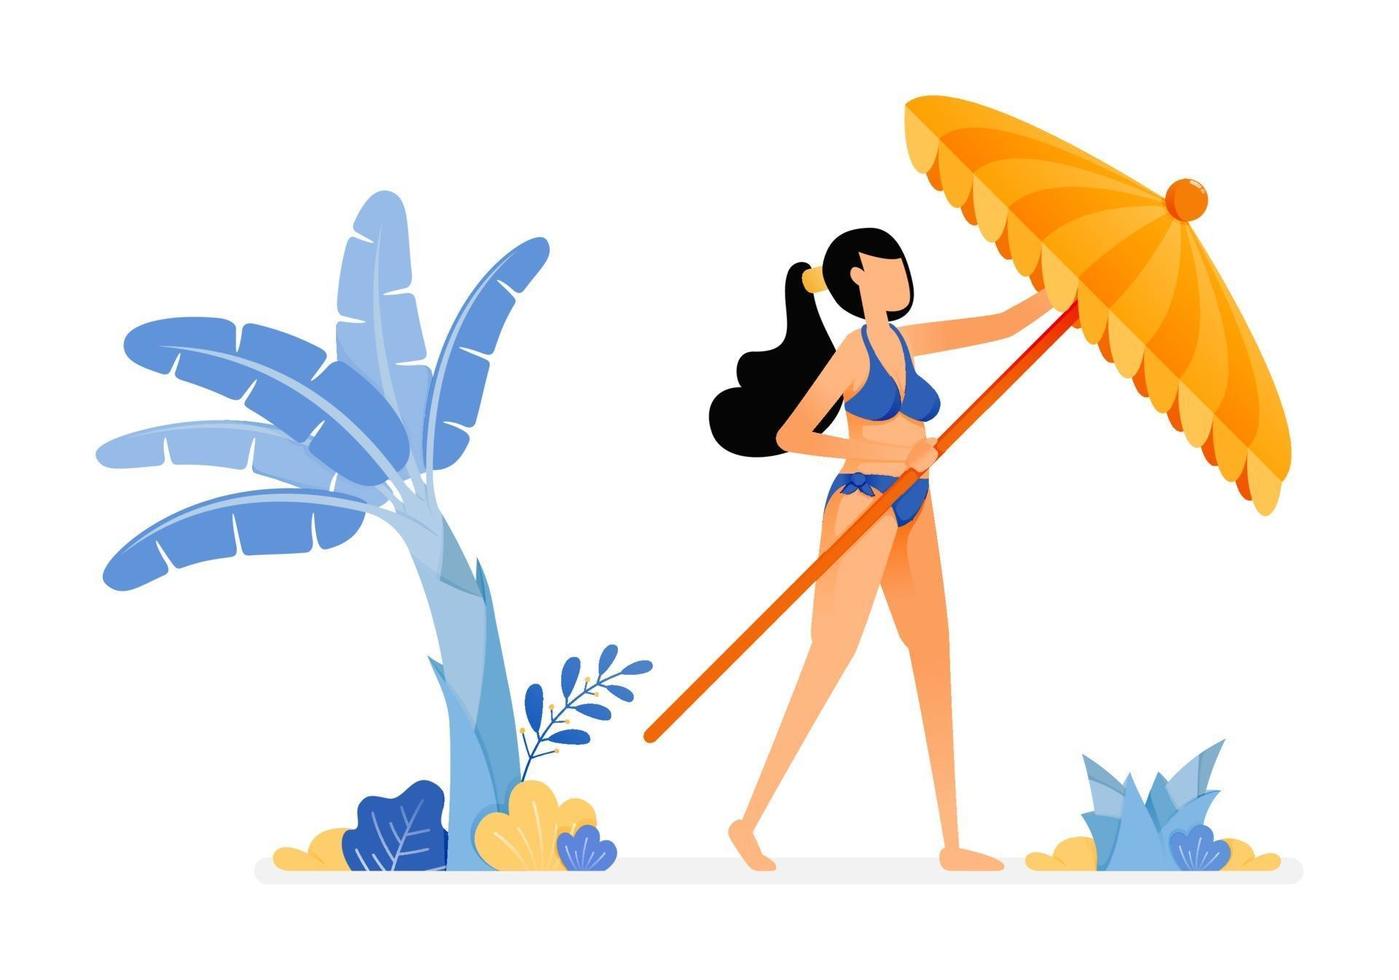 semesterillustrationer av kvinna försöker öppna ett strandparaply och koppla av under ett bananträd och solsken begreppet isolerad design kan vara för affischer banners annonser webbplatser webb mobil marknadsföring vektor